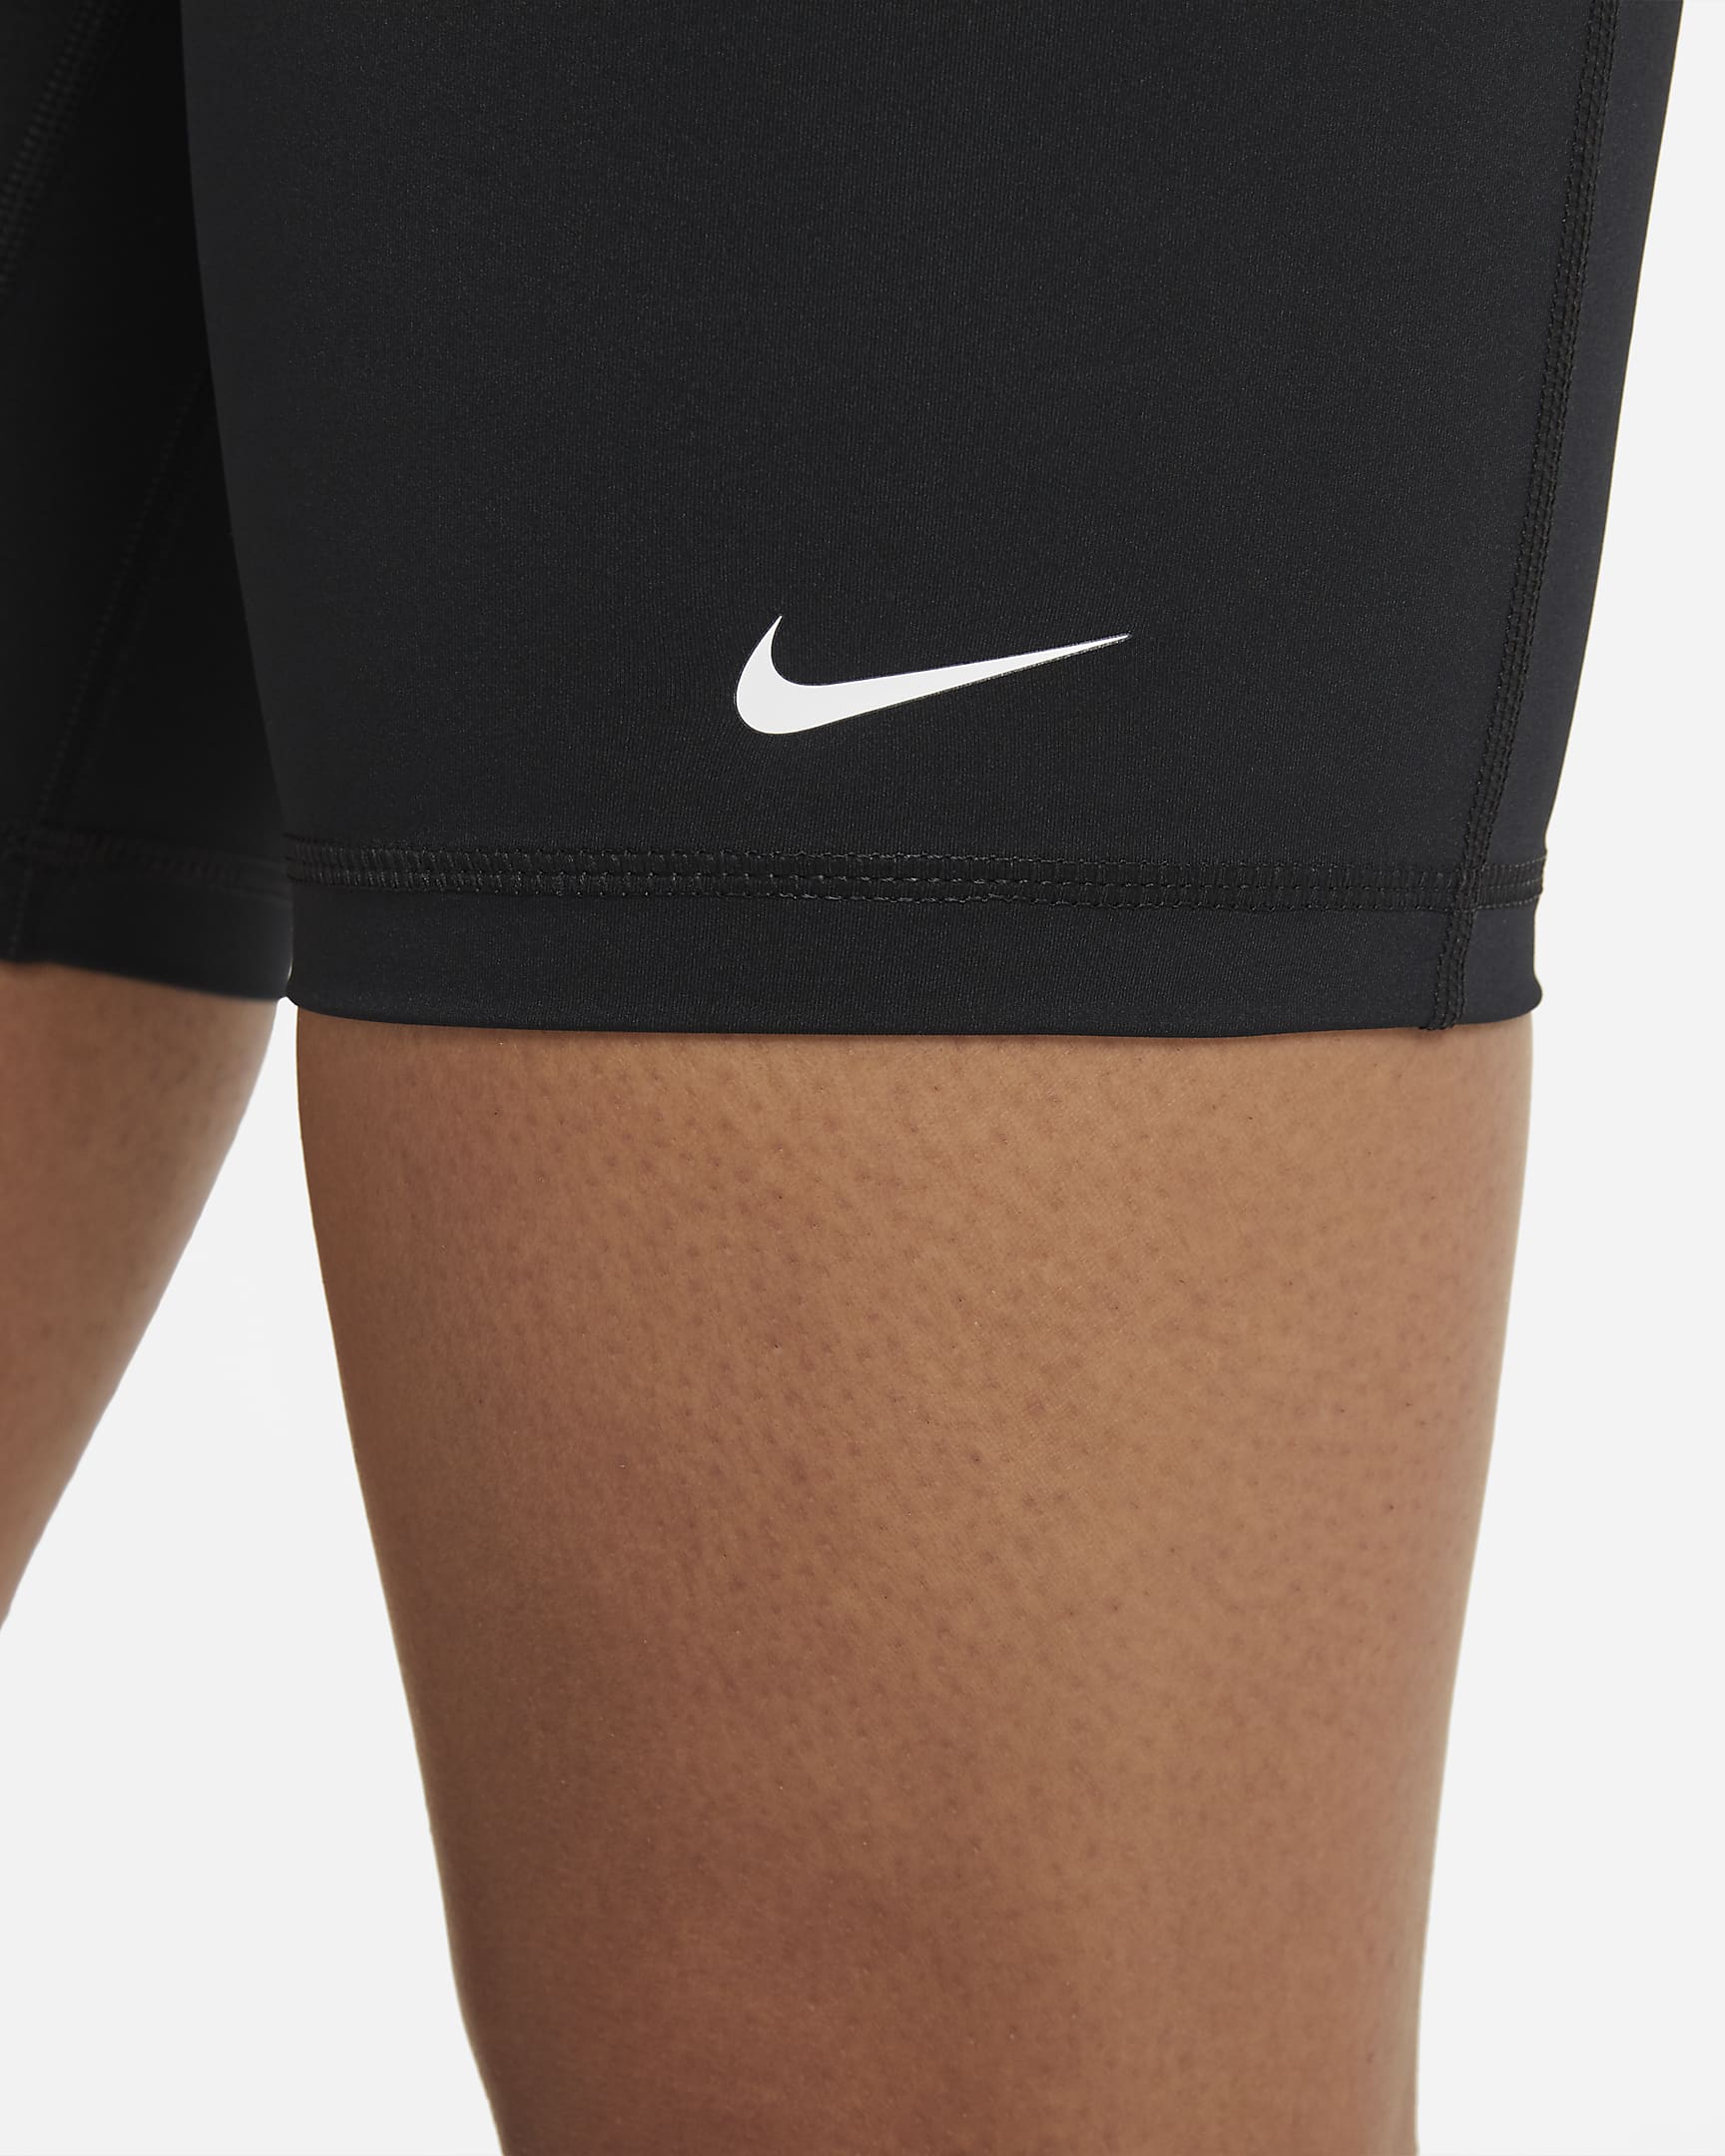 Nike Pro 365 Women's High-Waisted 7" Shorts - Black/White